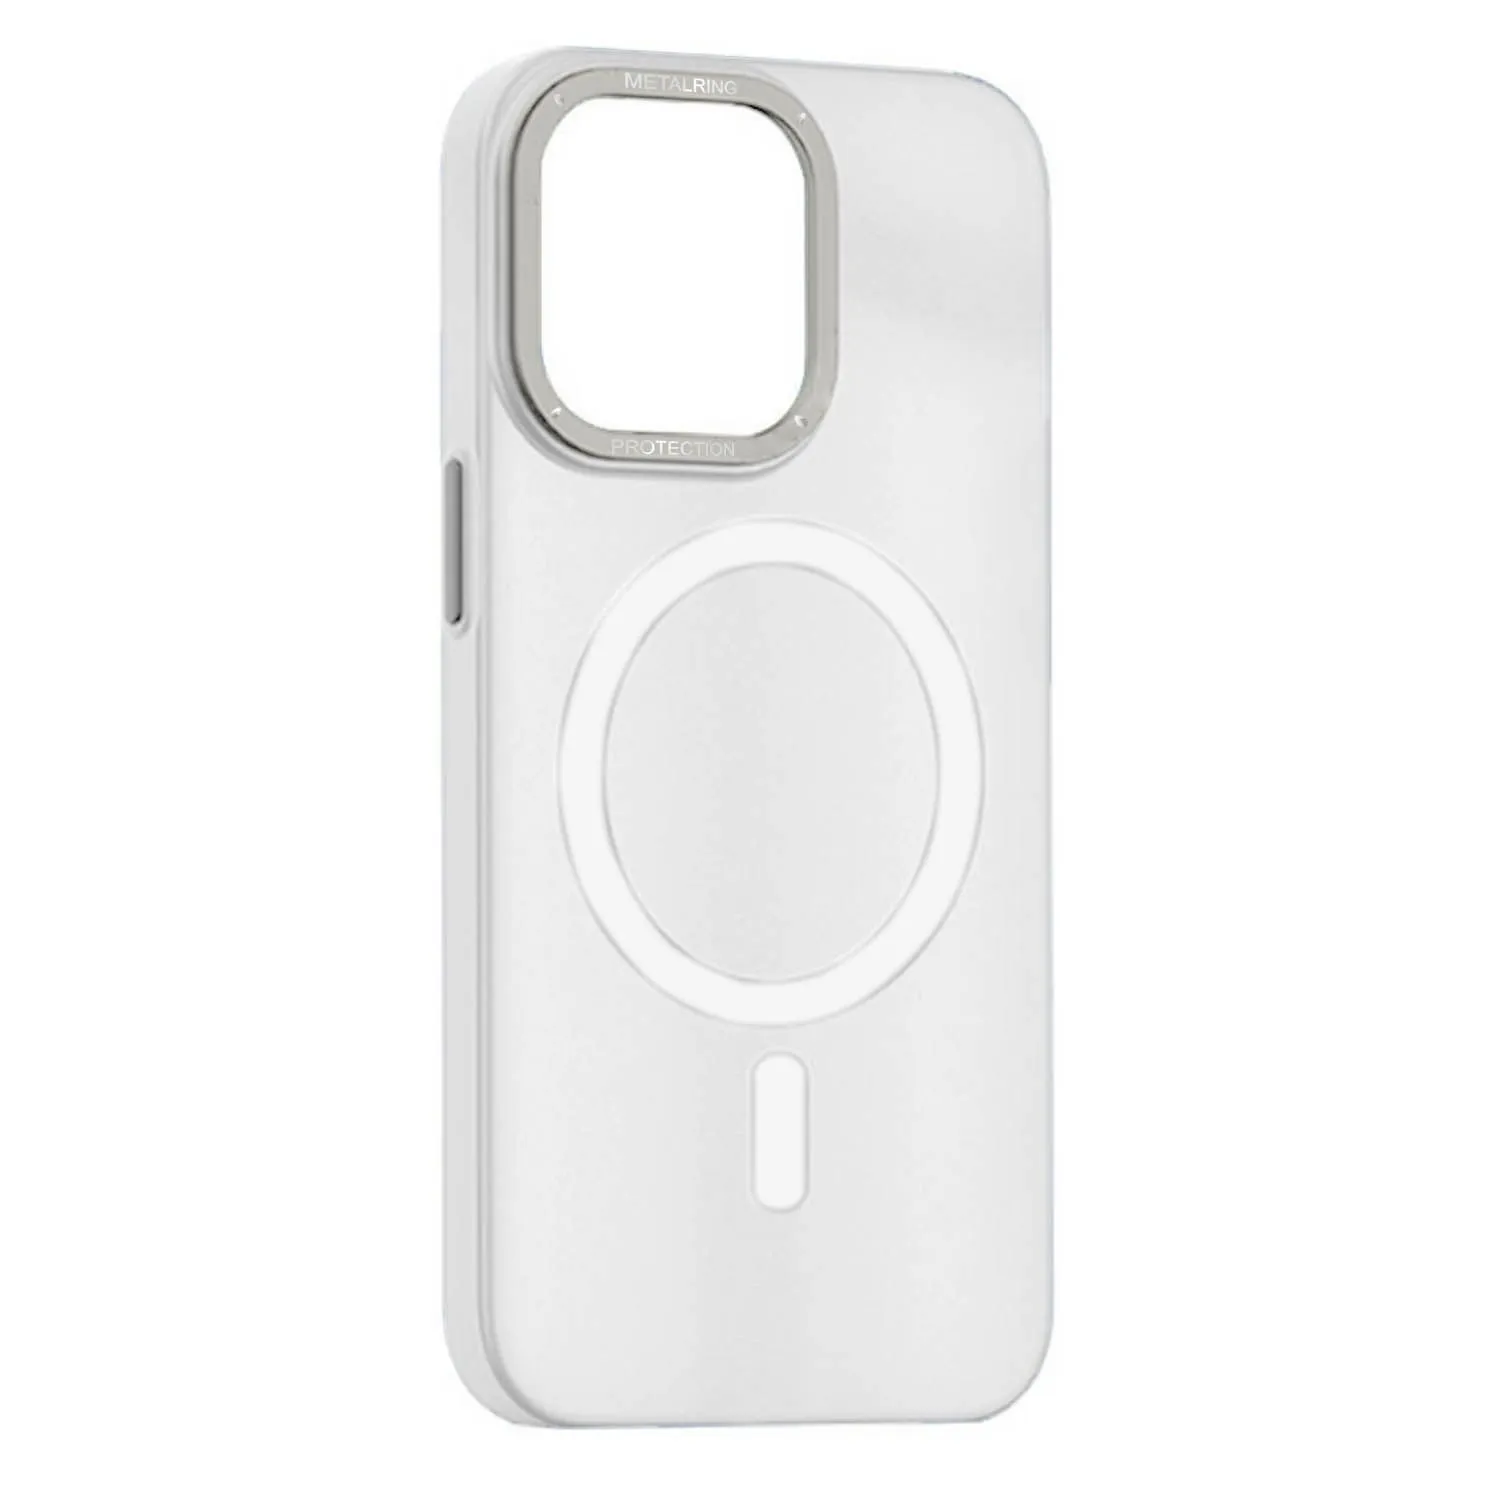 Матовый чехол Apple iPhone 11 с металлической окантовкой с MagSafe (белый)